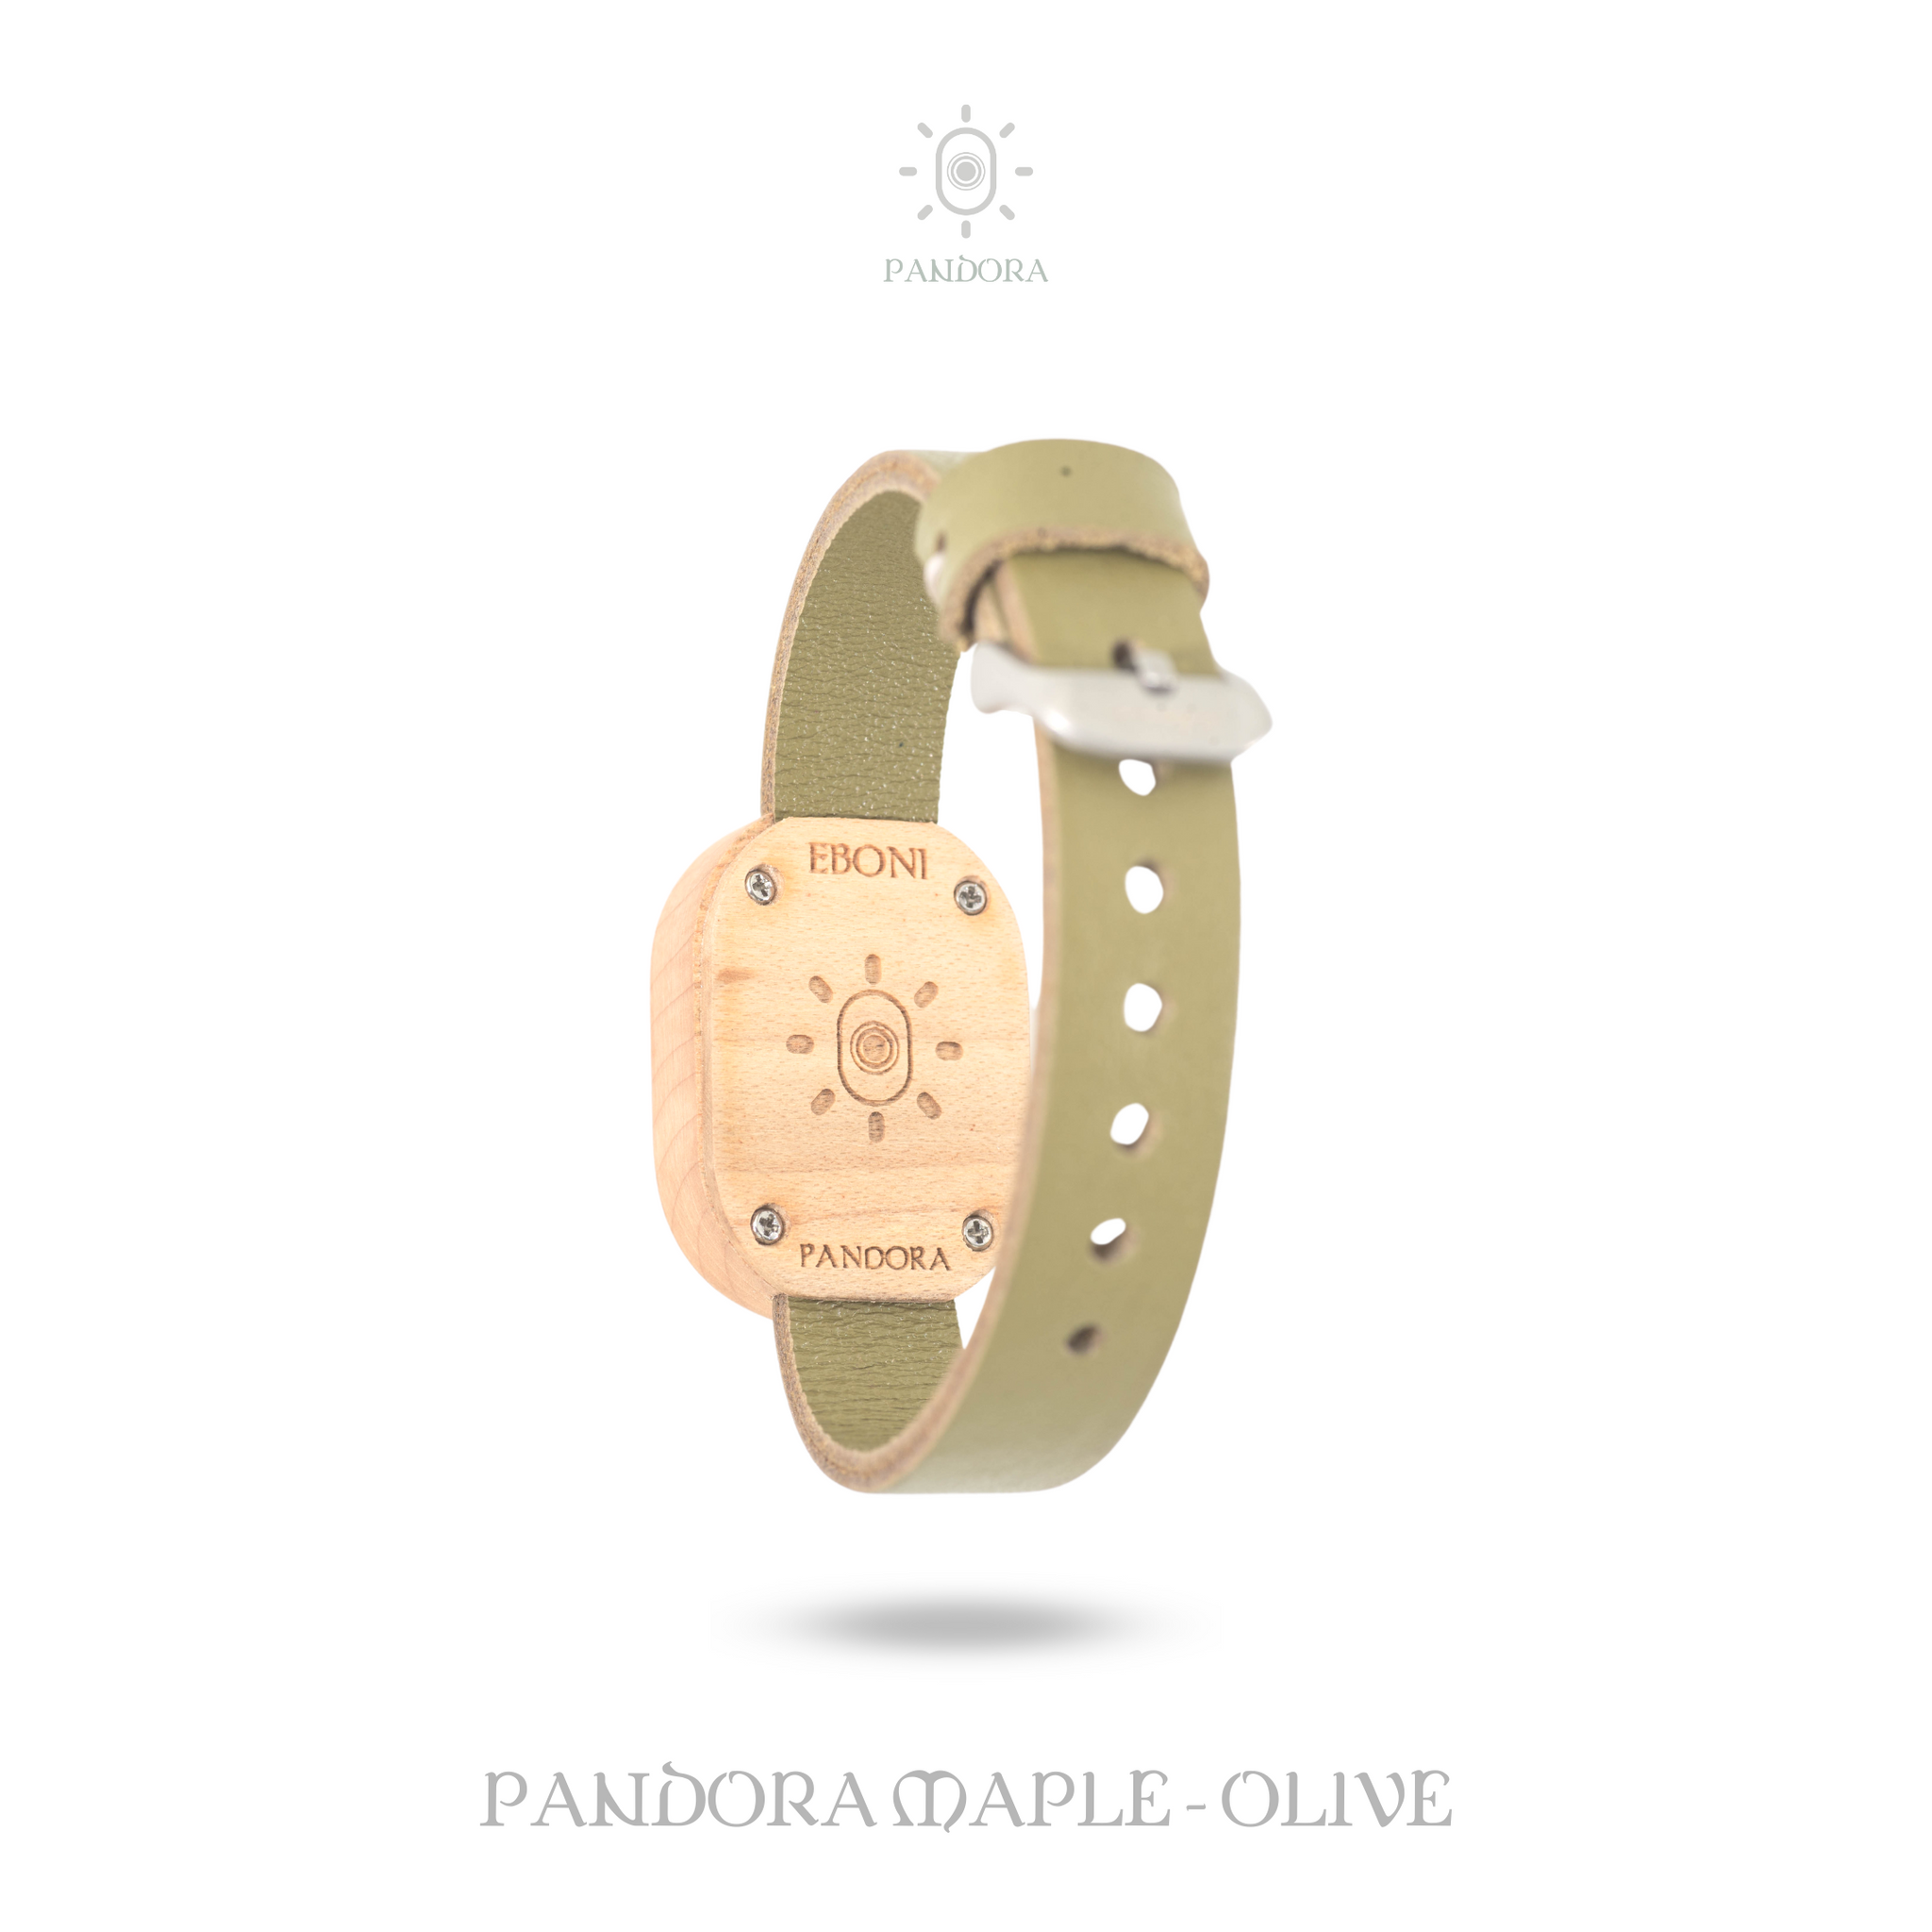 Eboni Pandora Maple - Olive